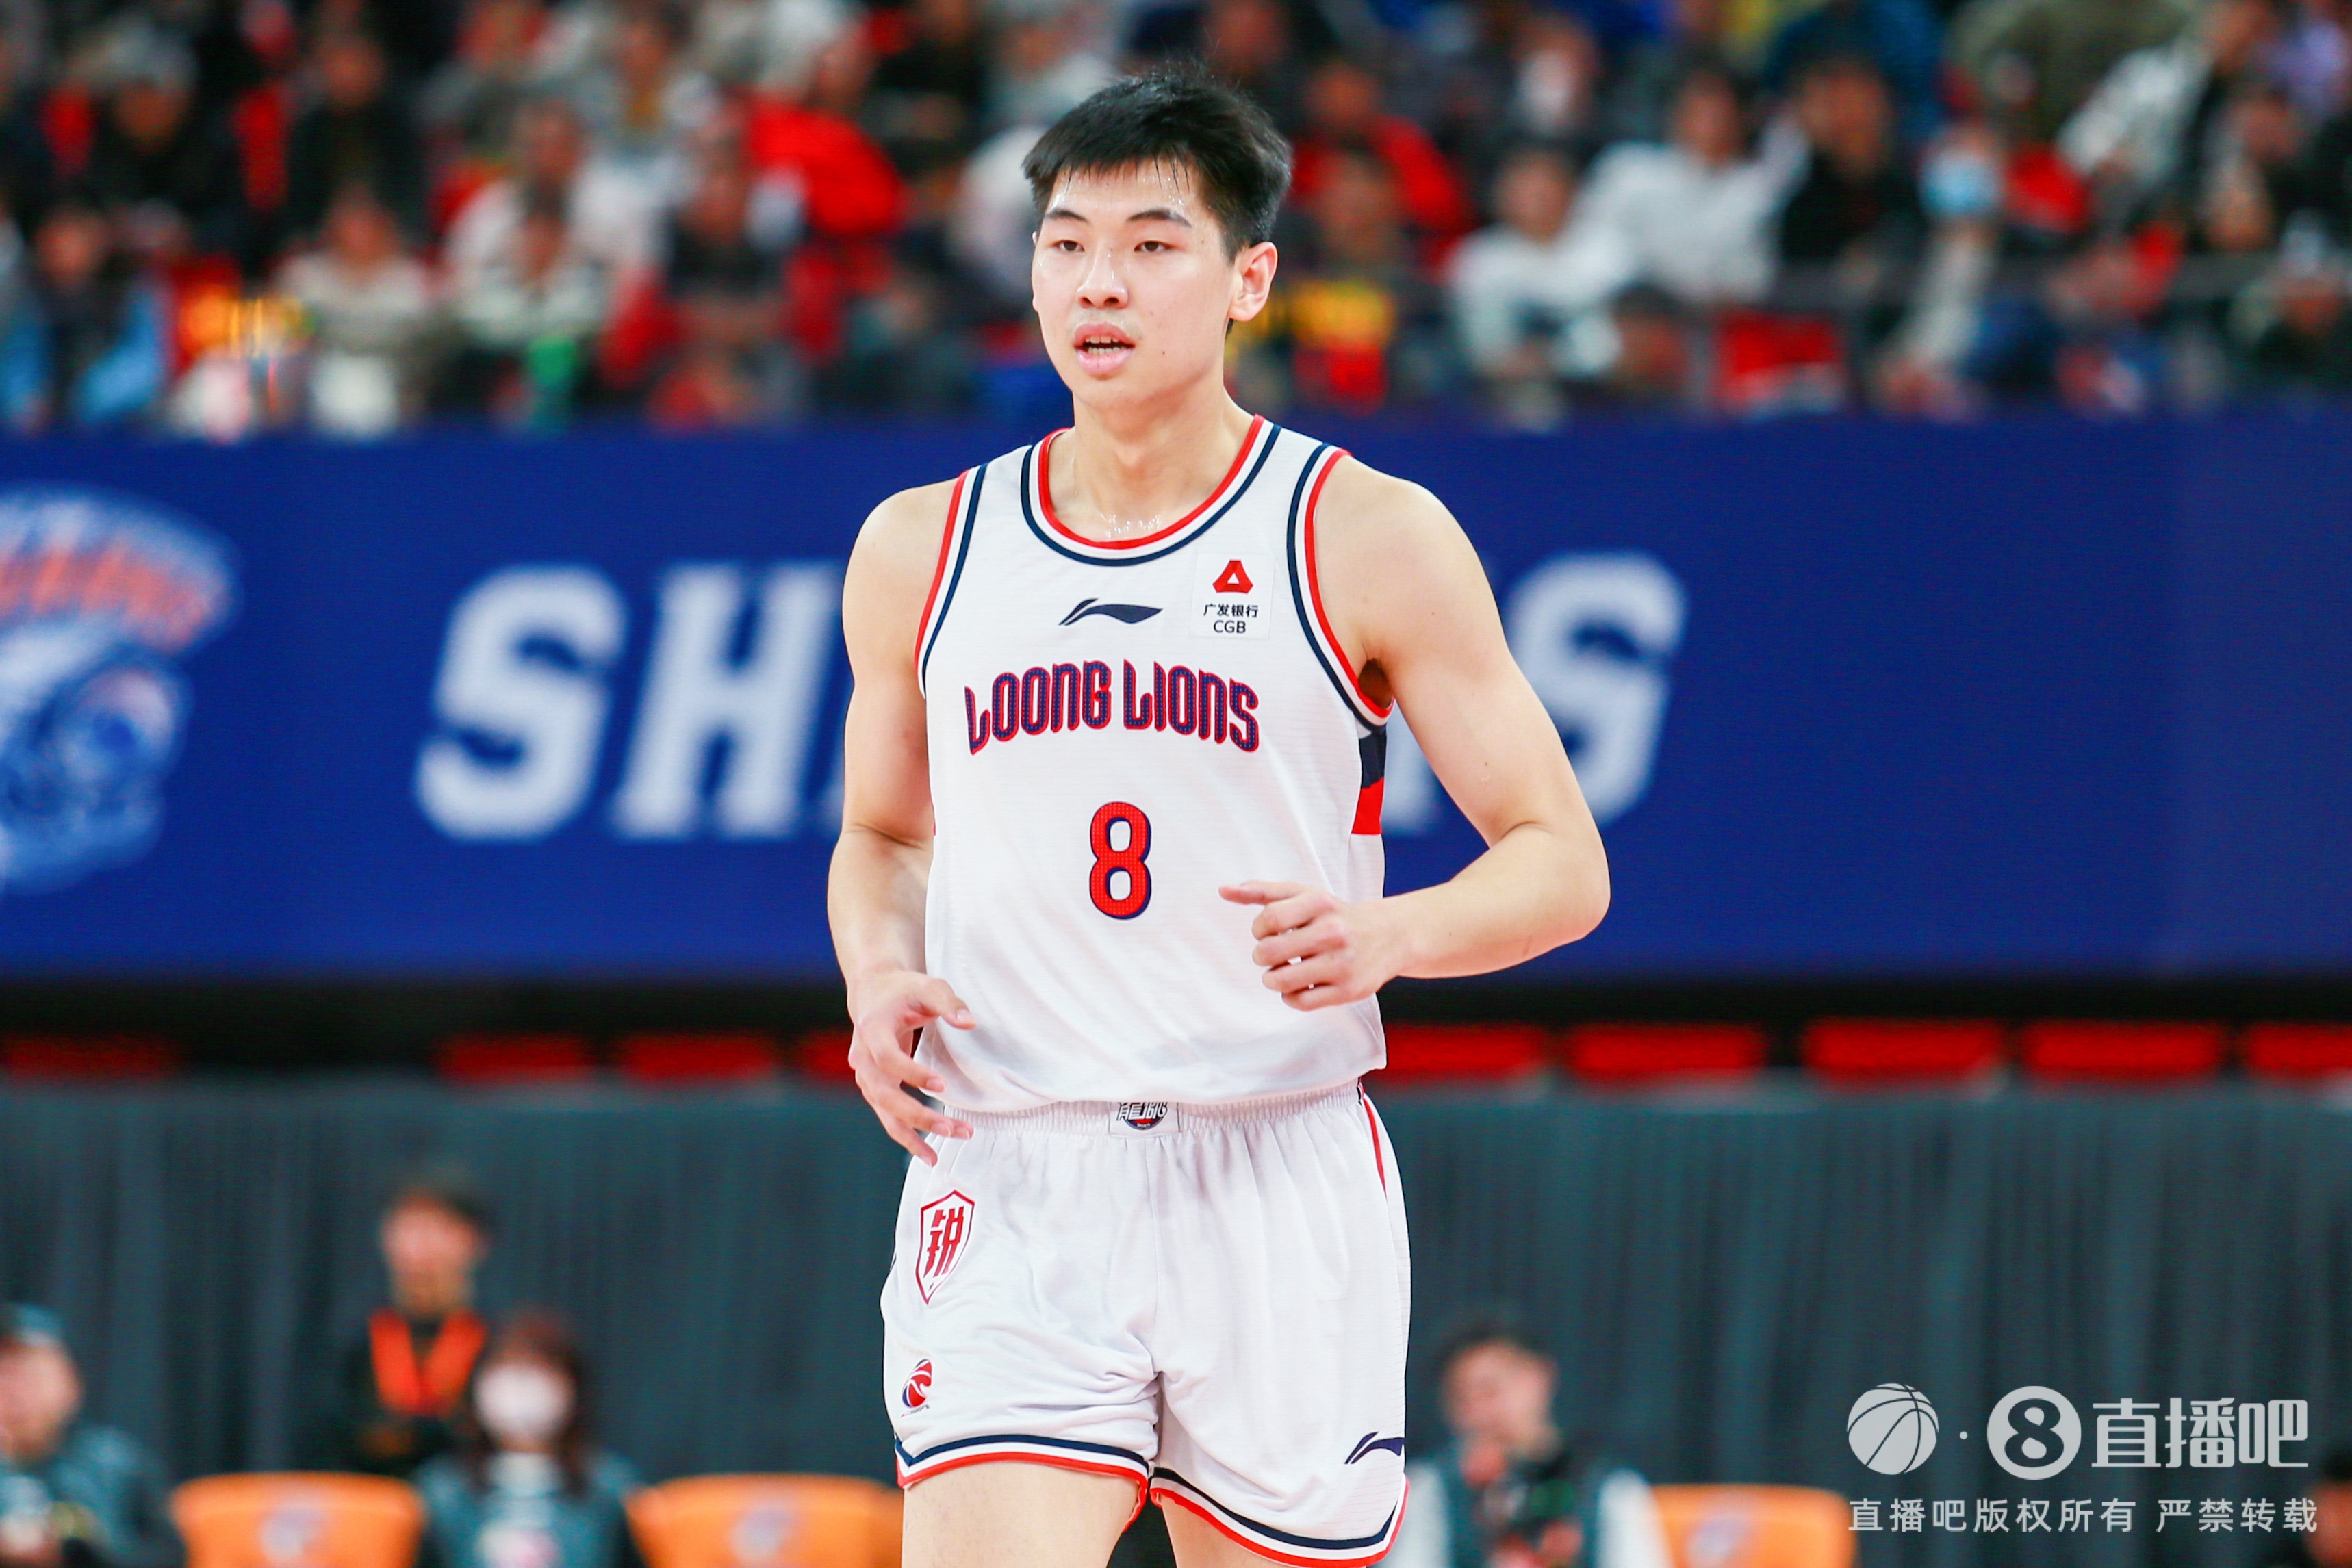 20岁小将勇敢走出舒适区值得称赞 中国篮球需要更多“崔永熙”